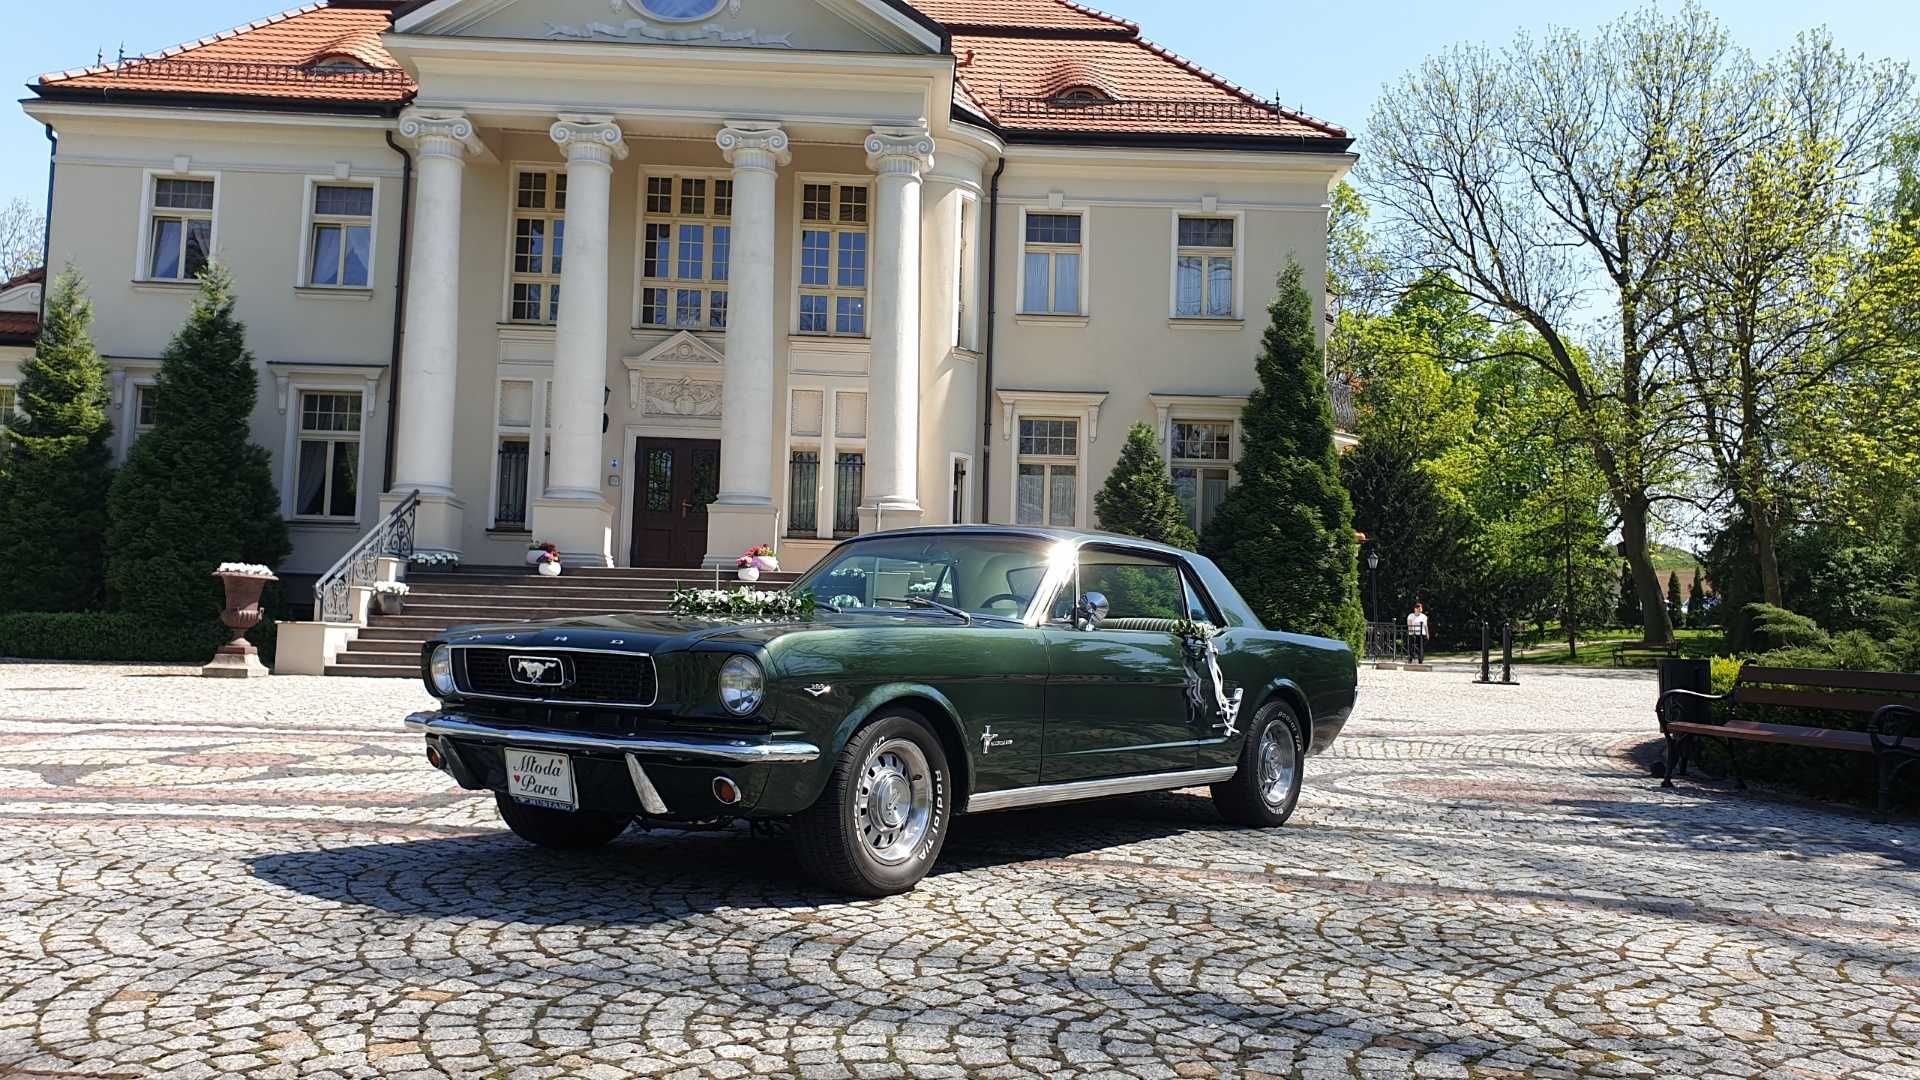 Auto do ślubu Mustang wynajem, samochód na wesele Wrocław łódź Kalisz